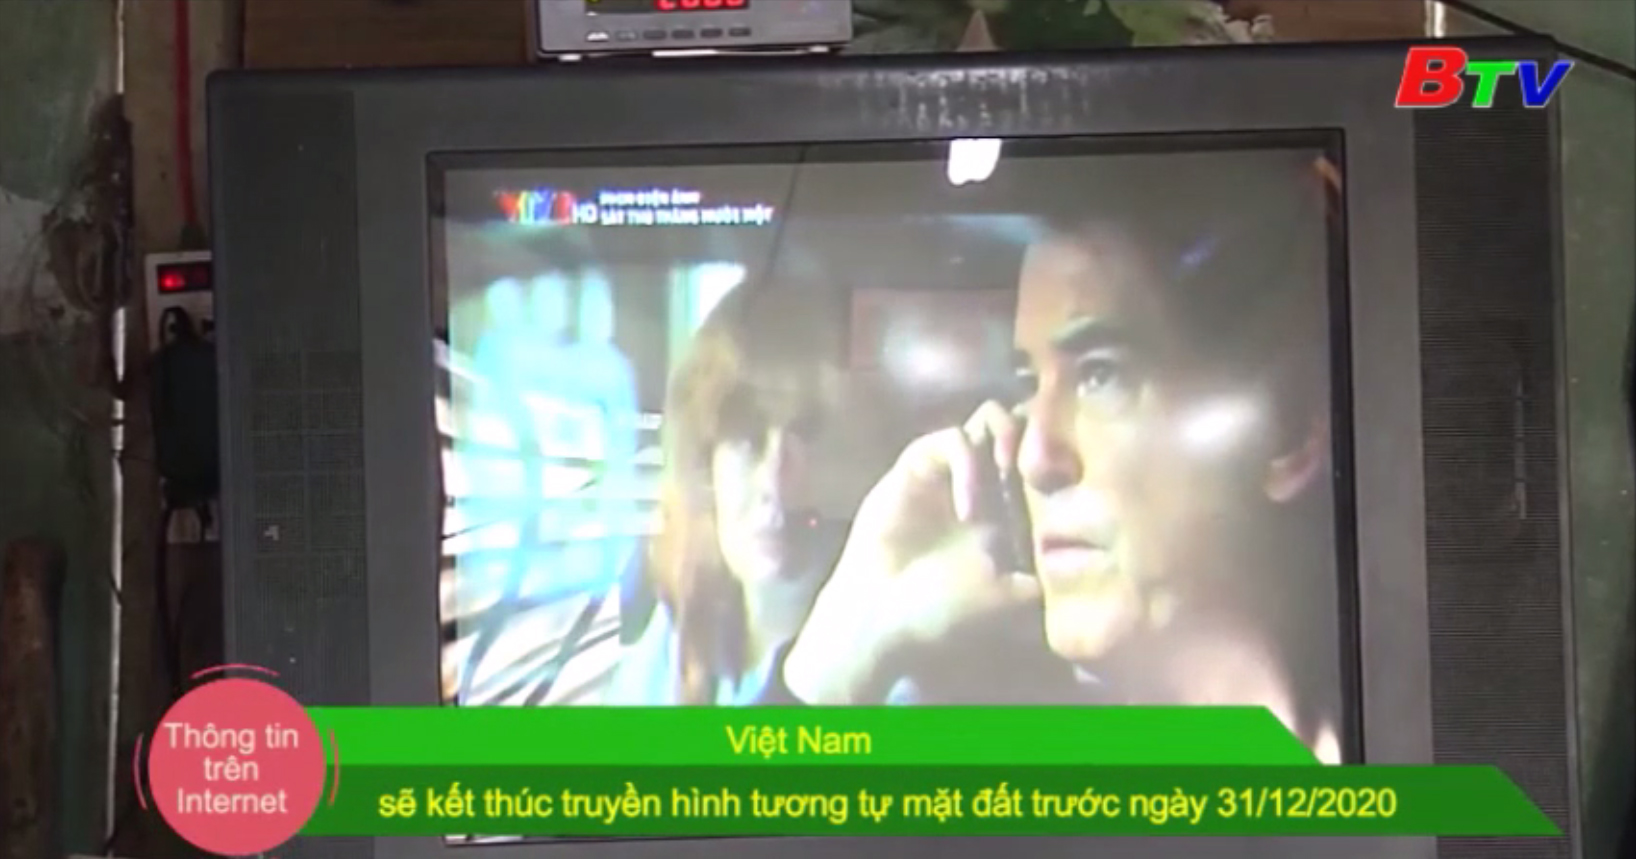 Việt Nam sẽ kết thúc truyền hình tương tự mặt đất trước ngày 31/12/2020